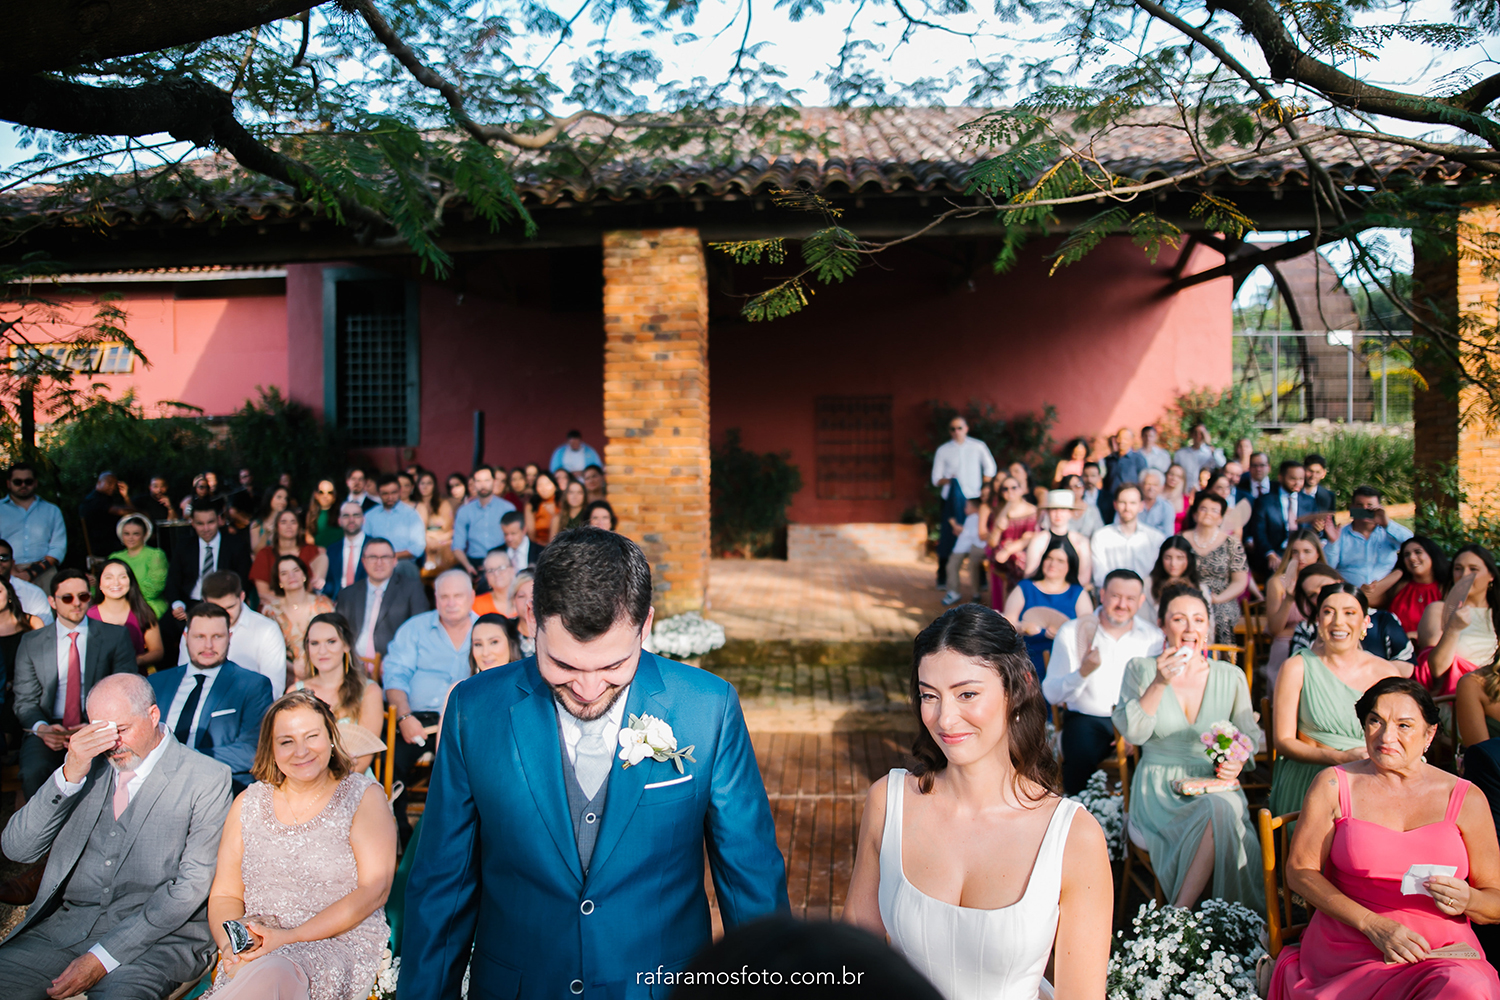 Beatriz e Vitor | Casamento bucólico em tons de verde e branco, por Rafa Ramos